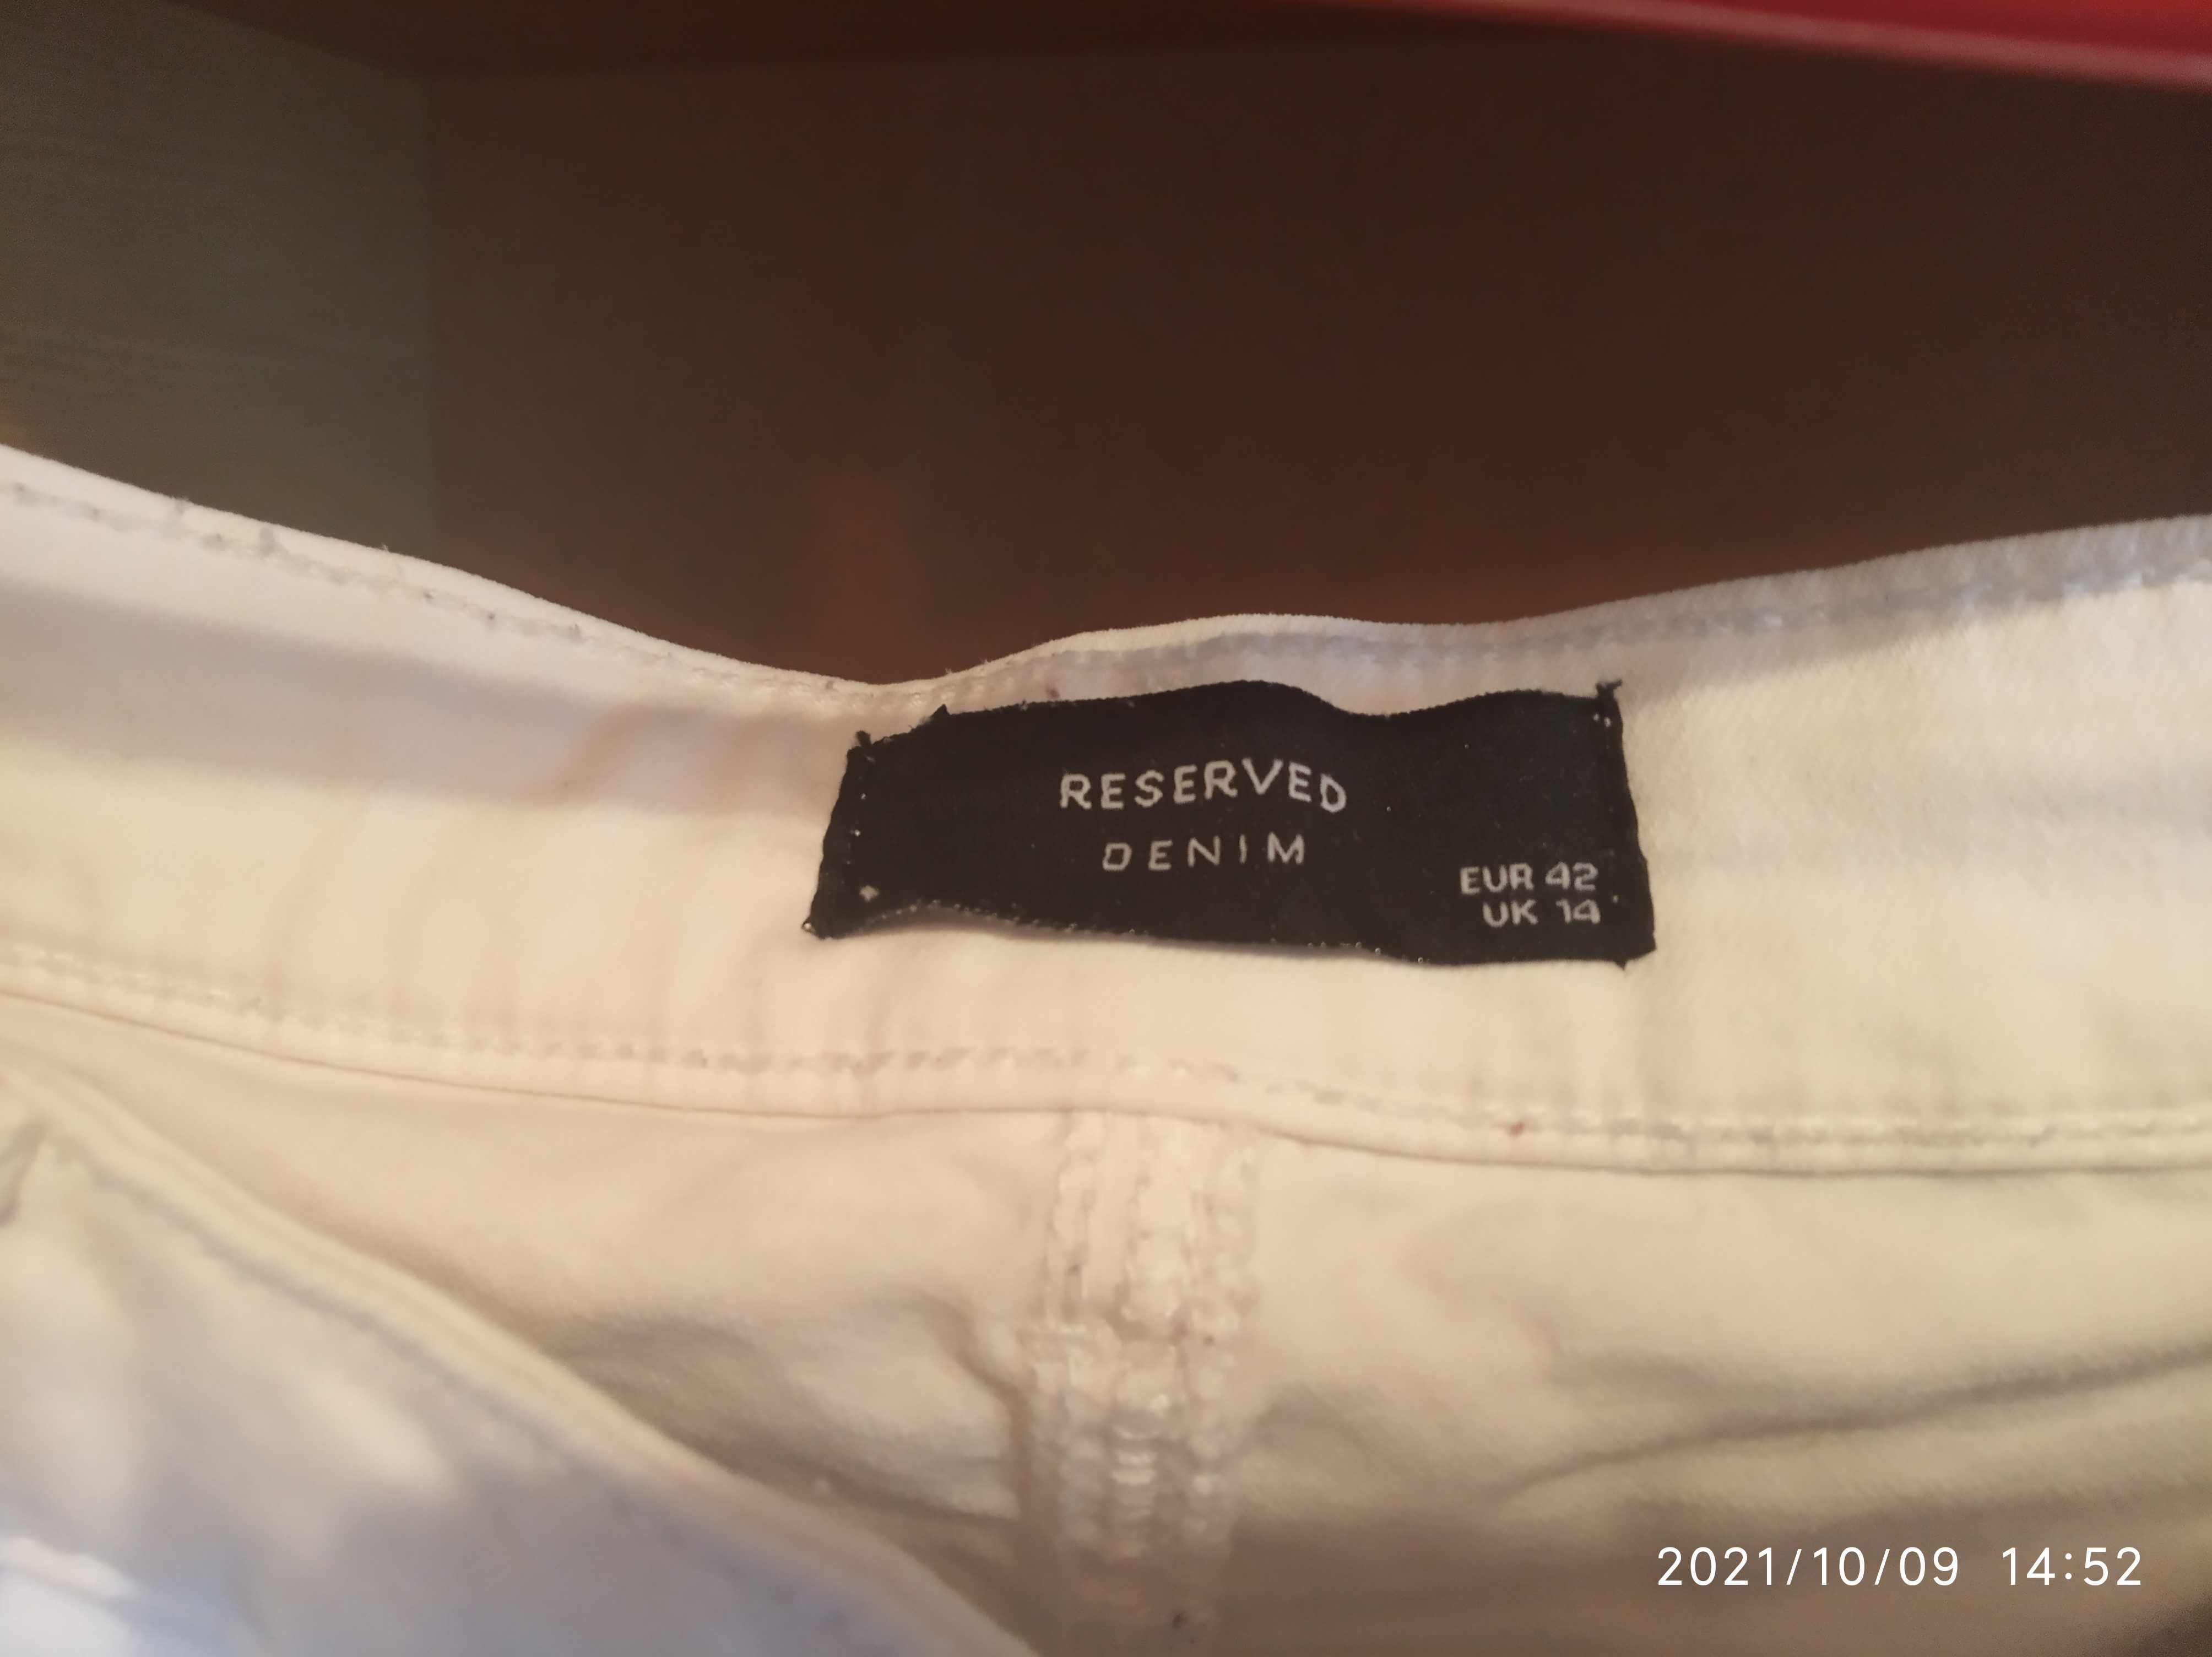 Продам брюки женские джинсовые белые х/б, размер европейский 42.